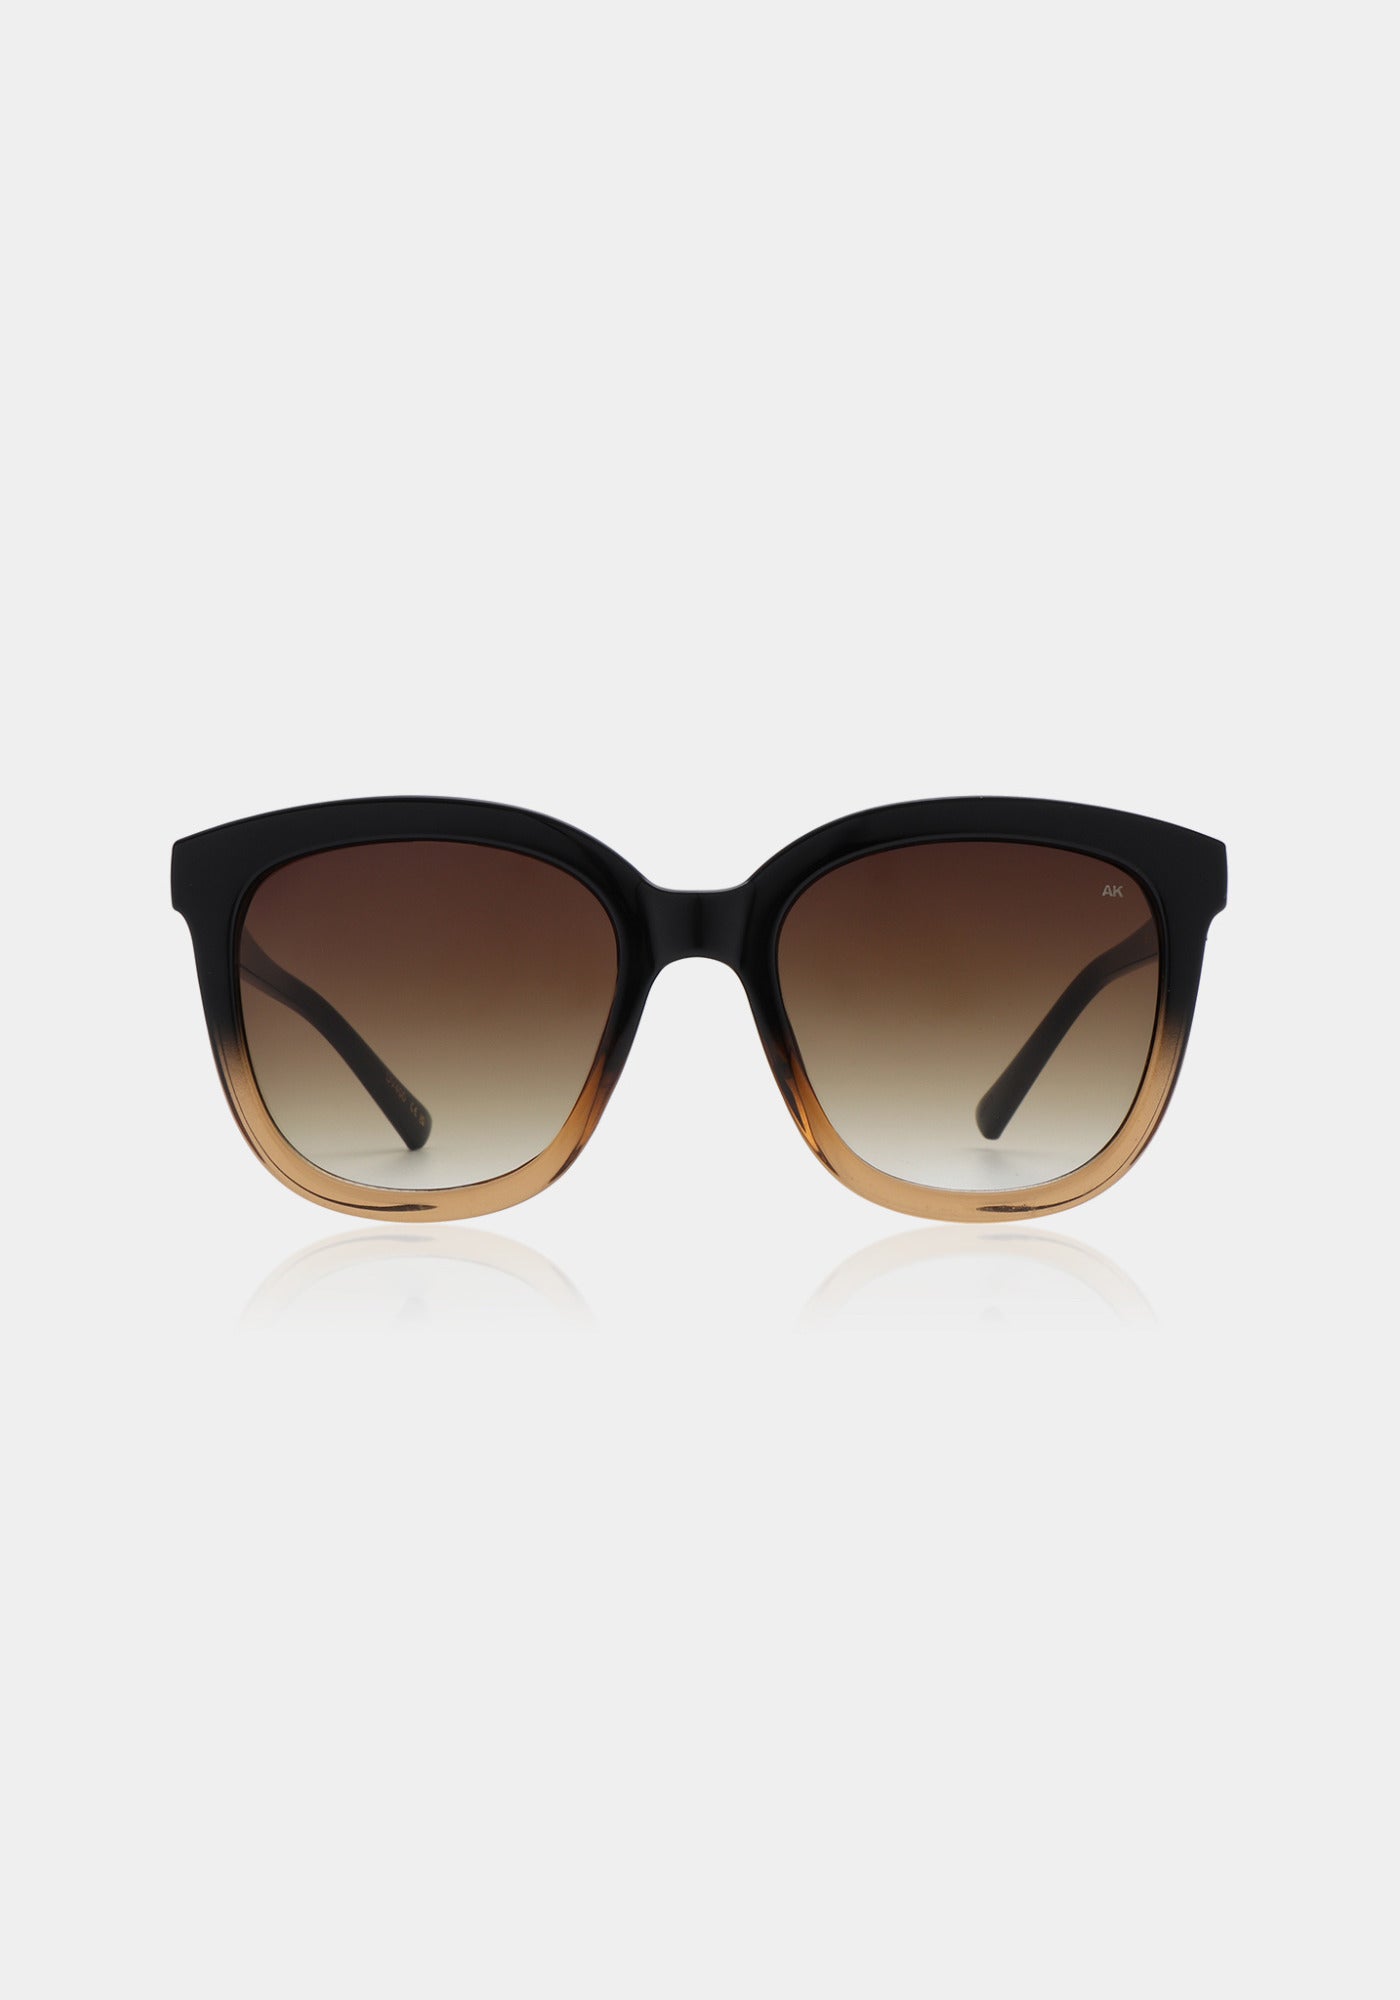 Les lunettes de soleil Billy black brown transparent de chez A.Kjaerbede